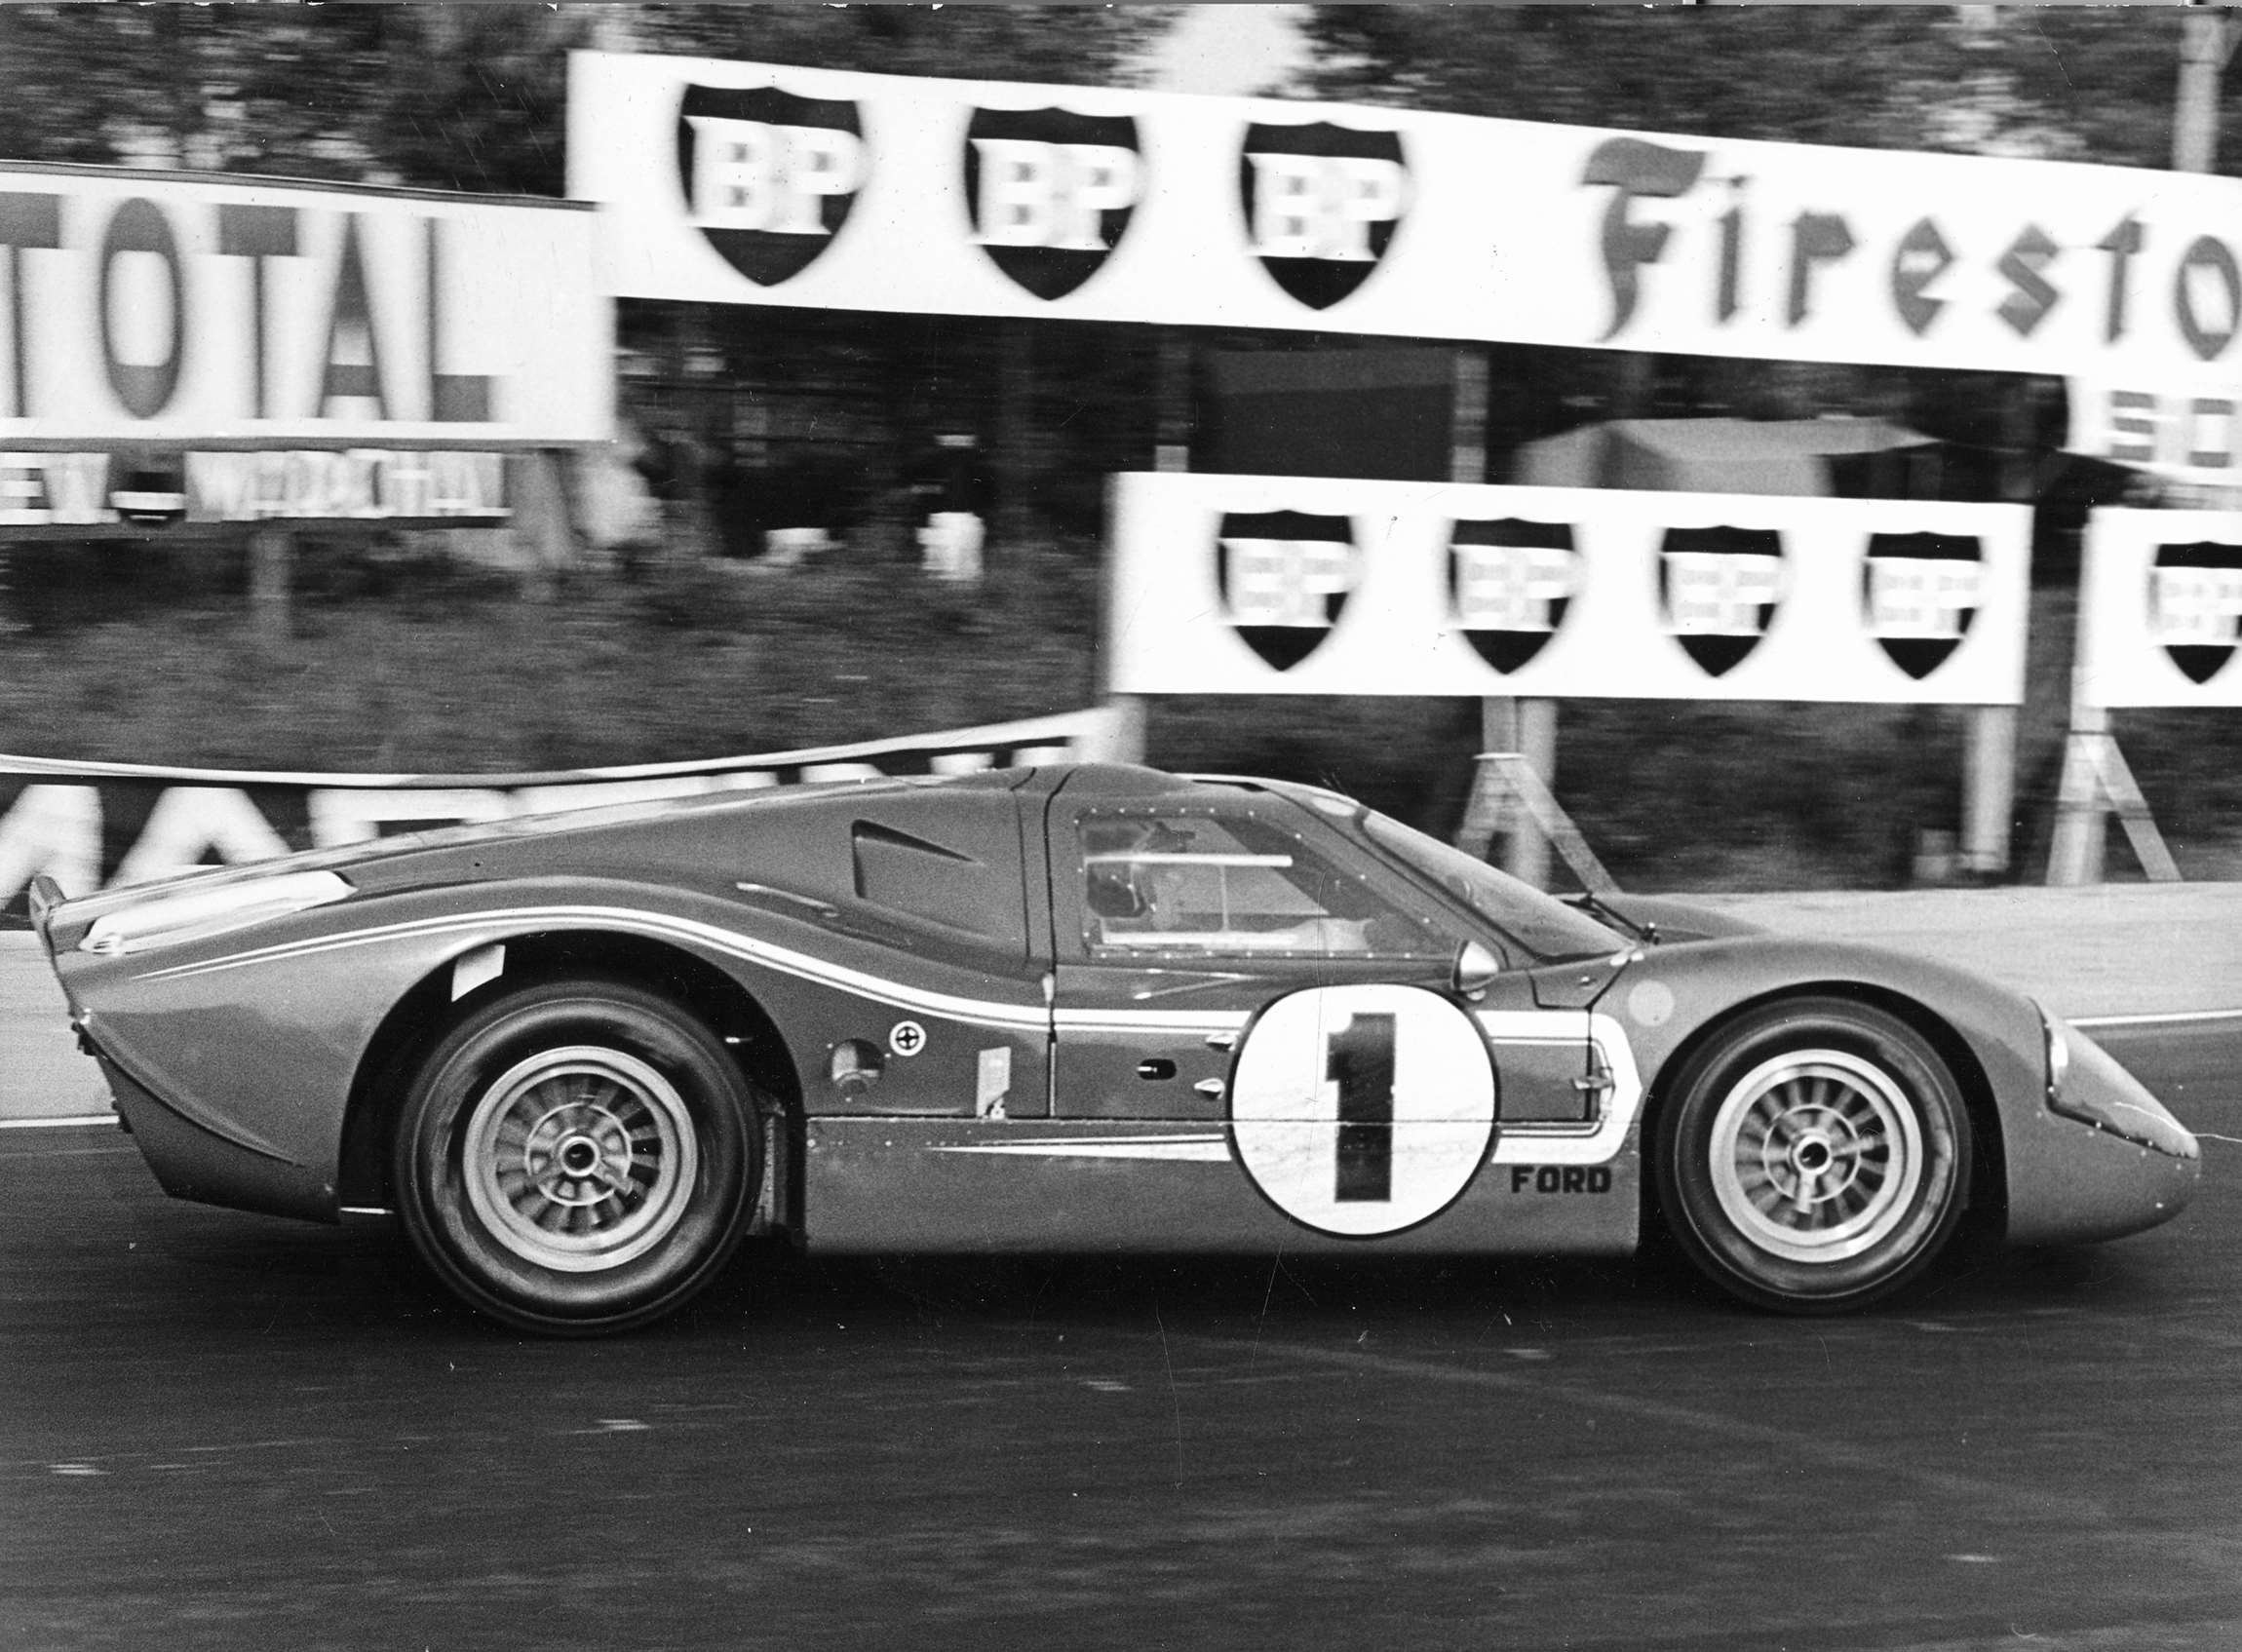 gpl-1967-le-mans-24hrs-winning-ford-mark-iv-shared-with-dan-gurney-at-mulsanne-corner.jpg